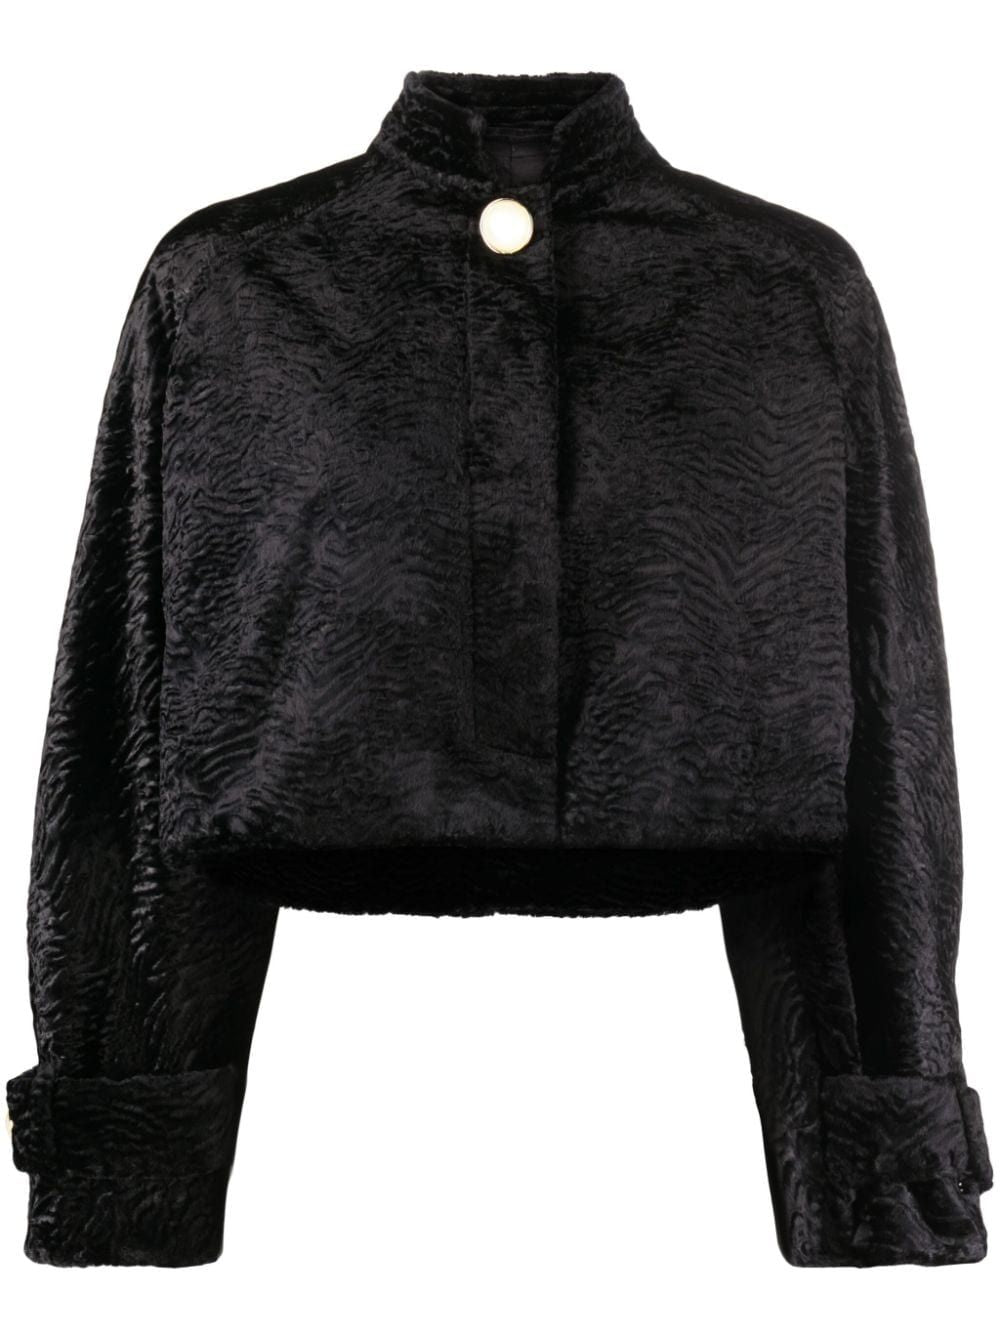 おしゃれな女性用黒ショートスーツジャケット | 暖かくてシックなFW23アウター